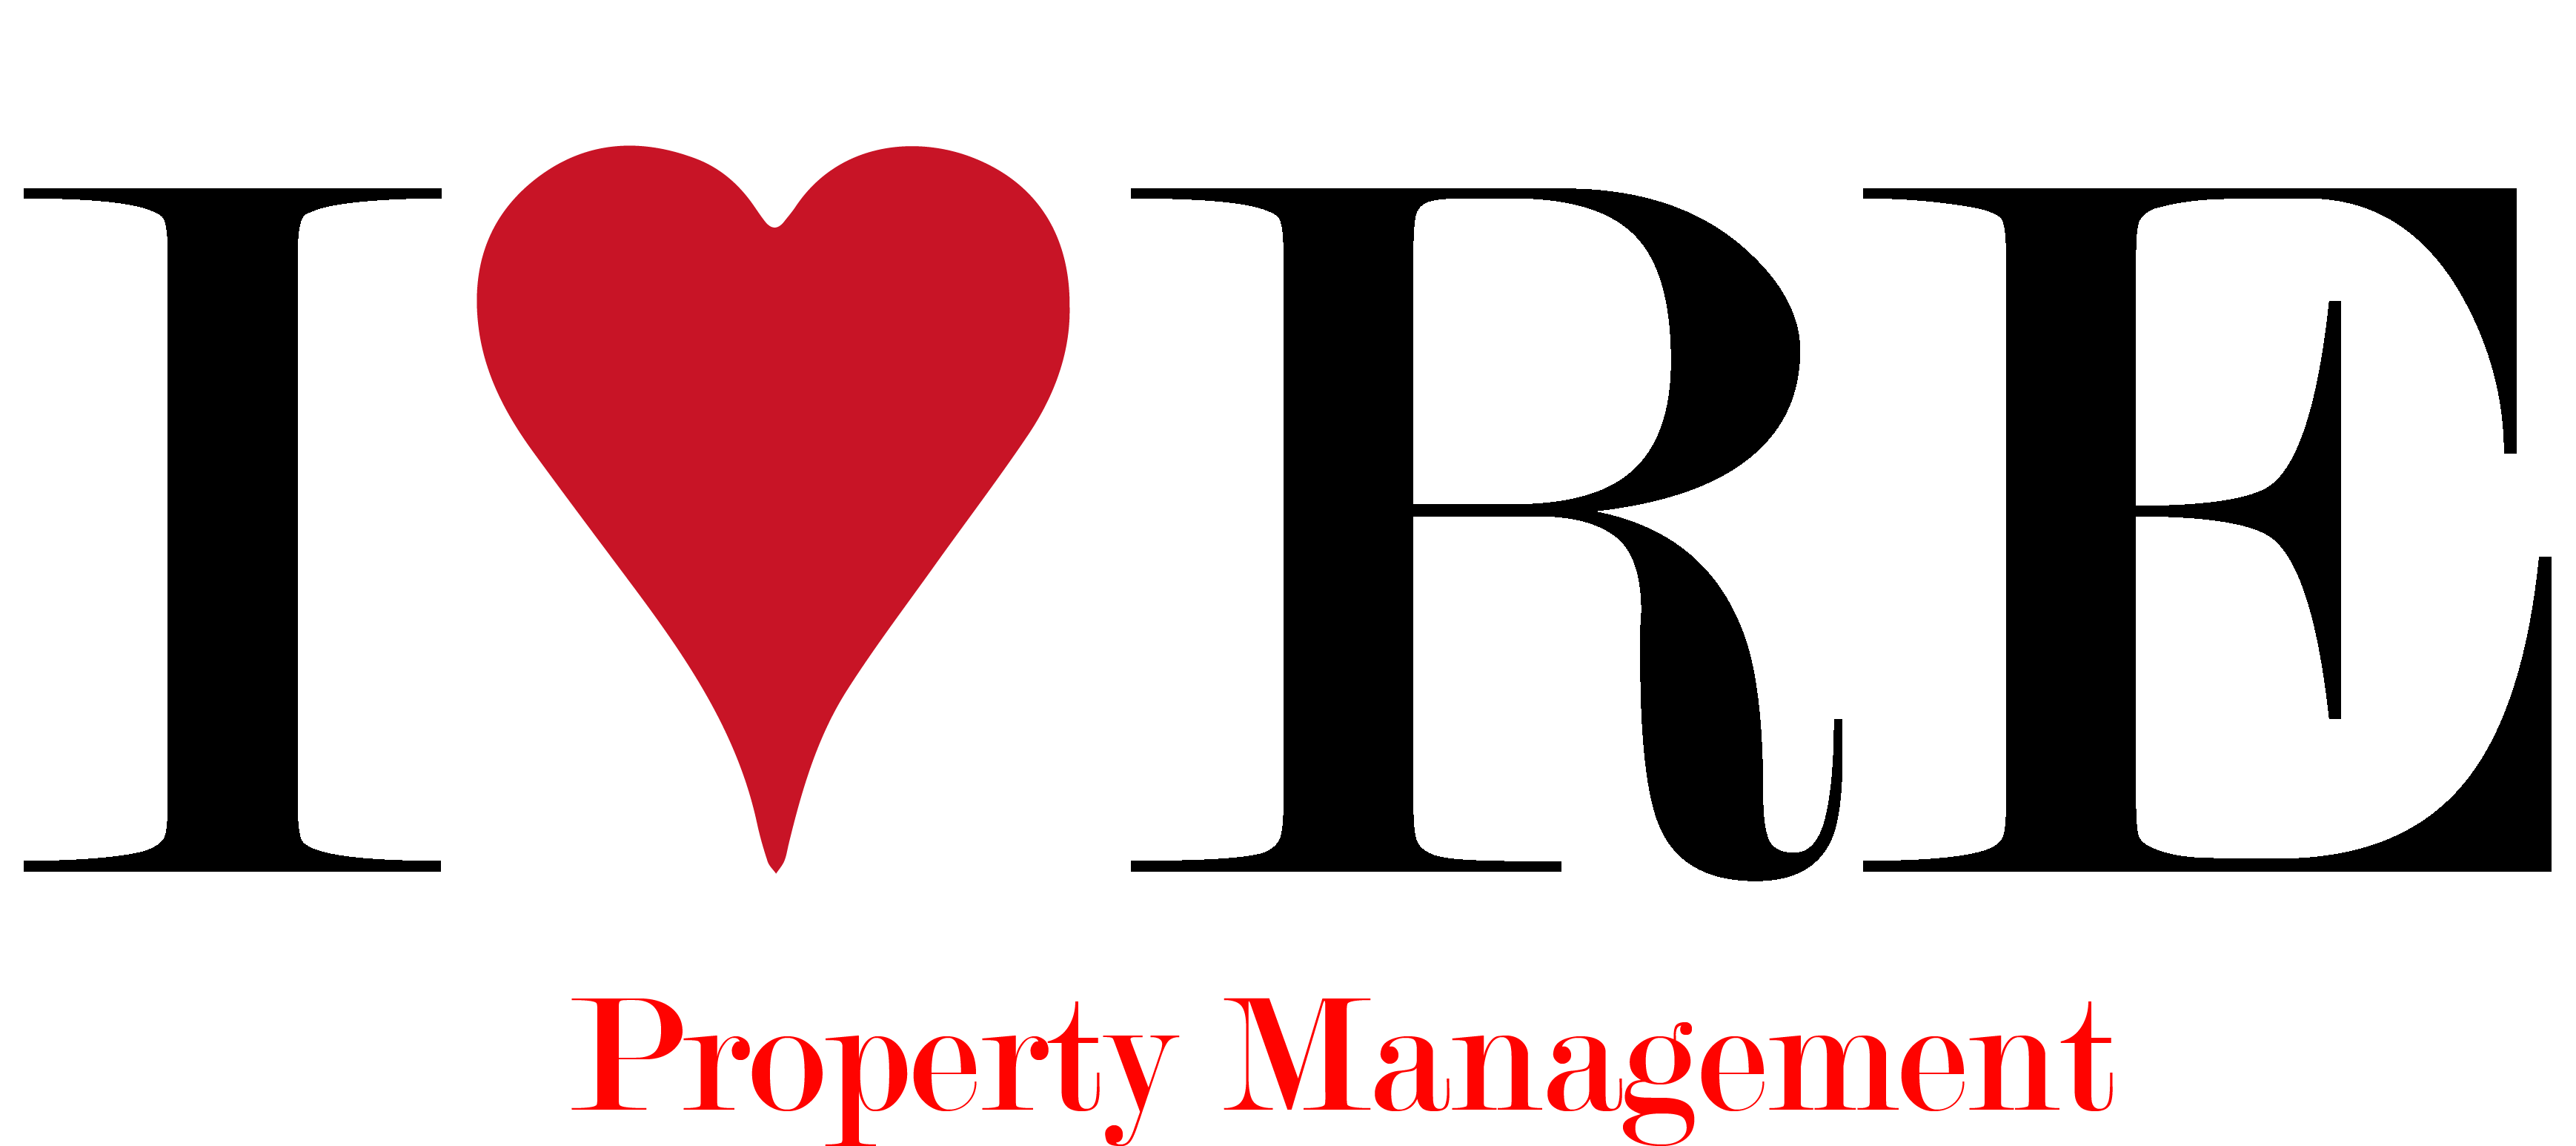 I Heart Real Estate Property Management logo